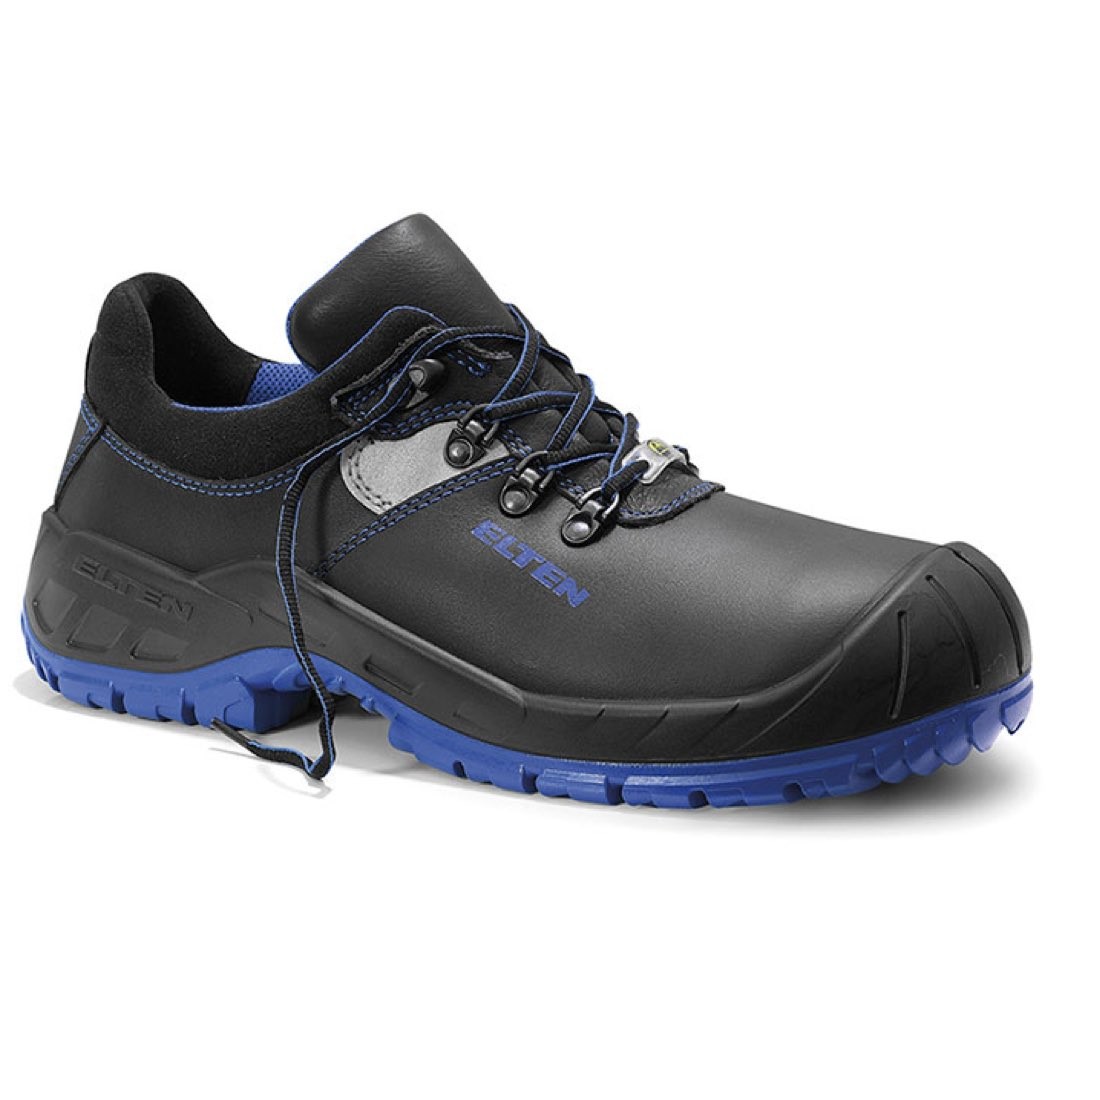 Zapato de seguridad ELTEN ALESSIO Low ESD S3, zapato de seguridad para construccion, zapato de construccion, elten, salstock